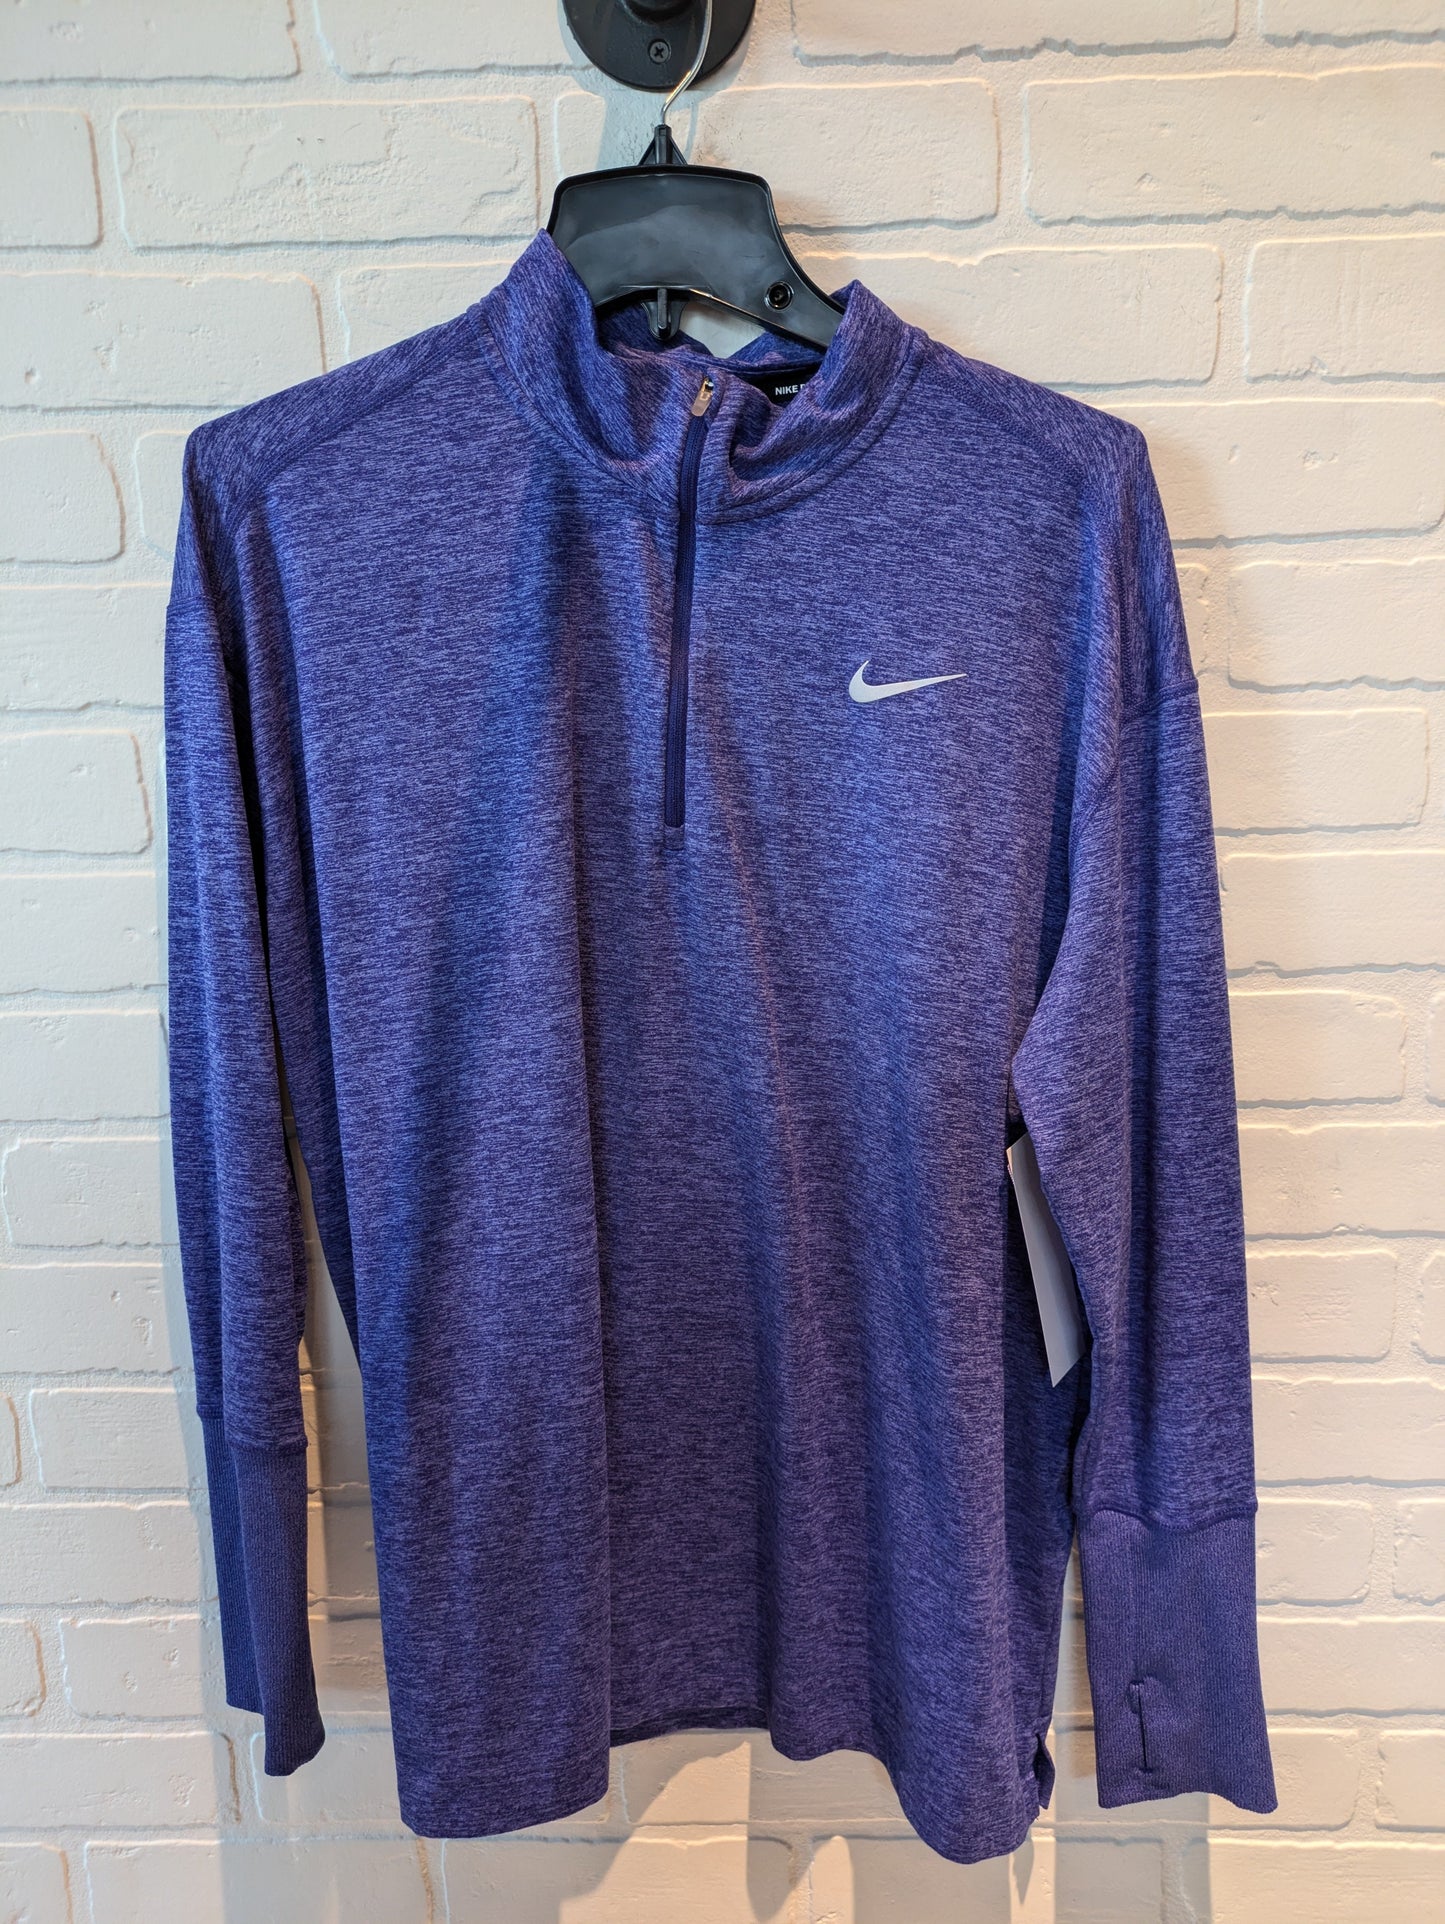 Blue Athletic Jacket Nike, Size 1x